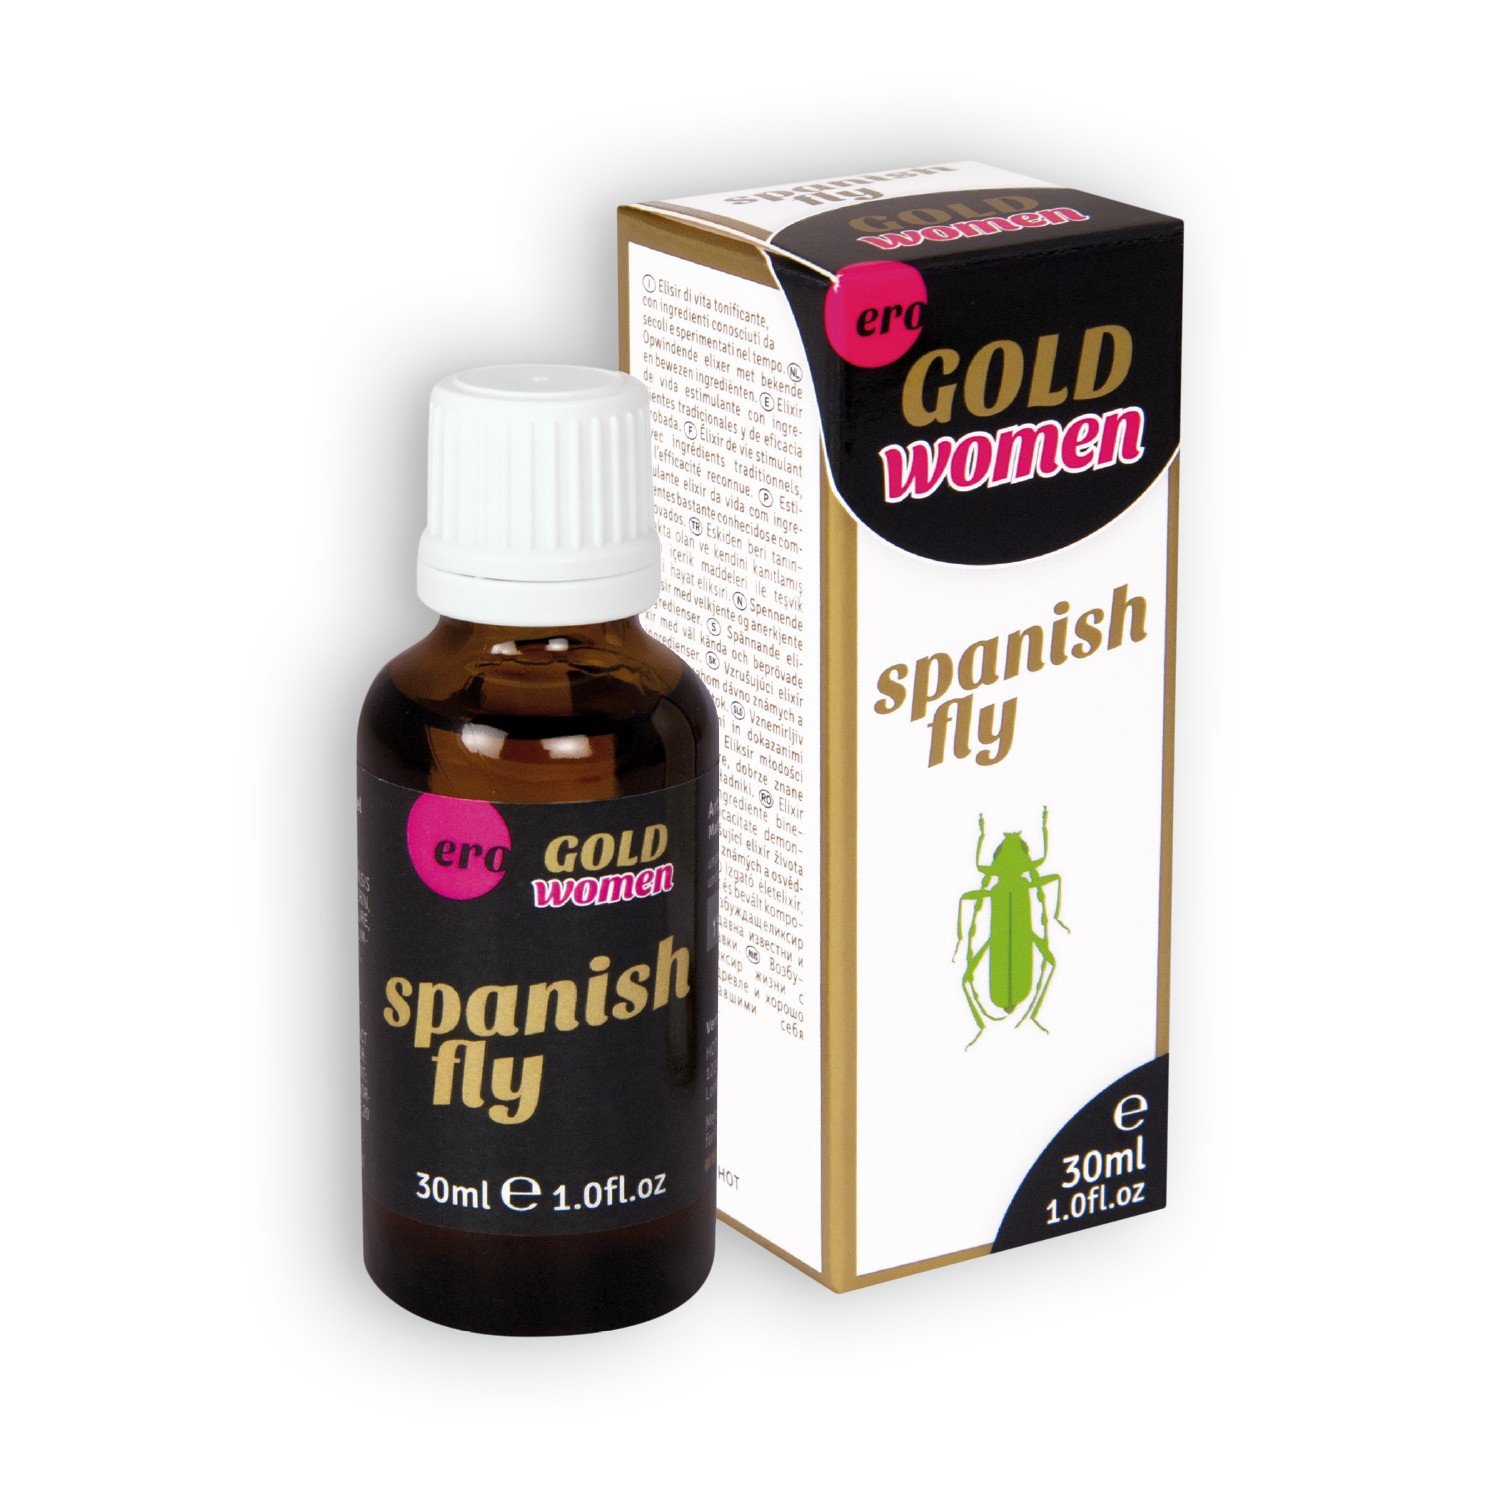 gotas-gold-women-spanish-fly-ero-para-mulher-30ml-pharma-ero